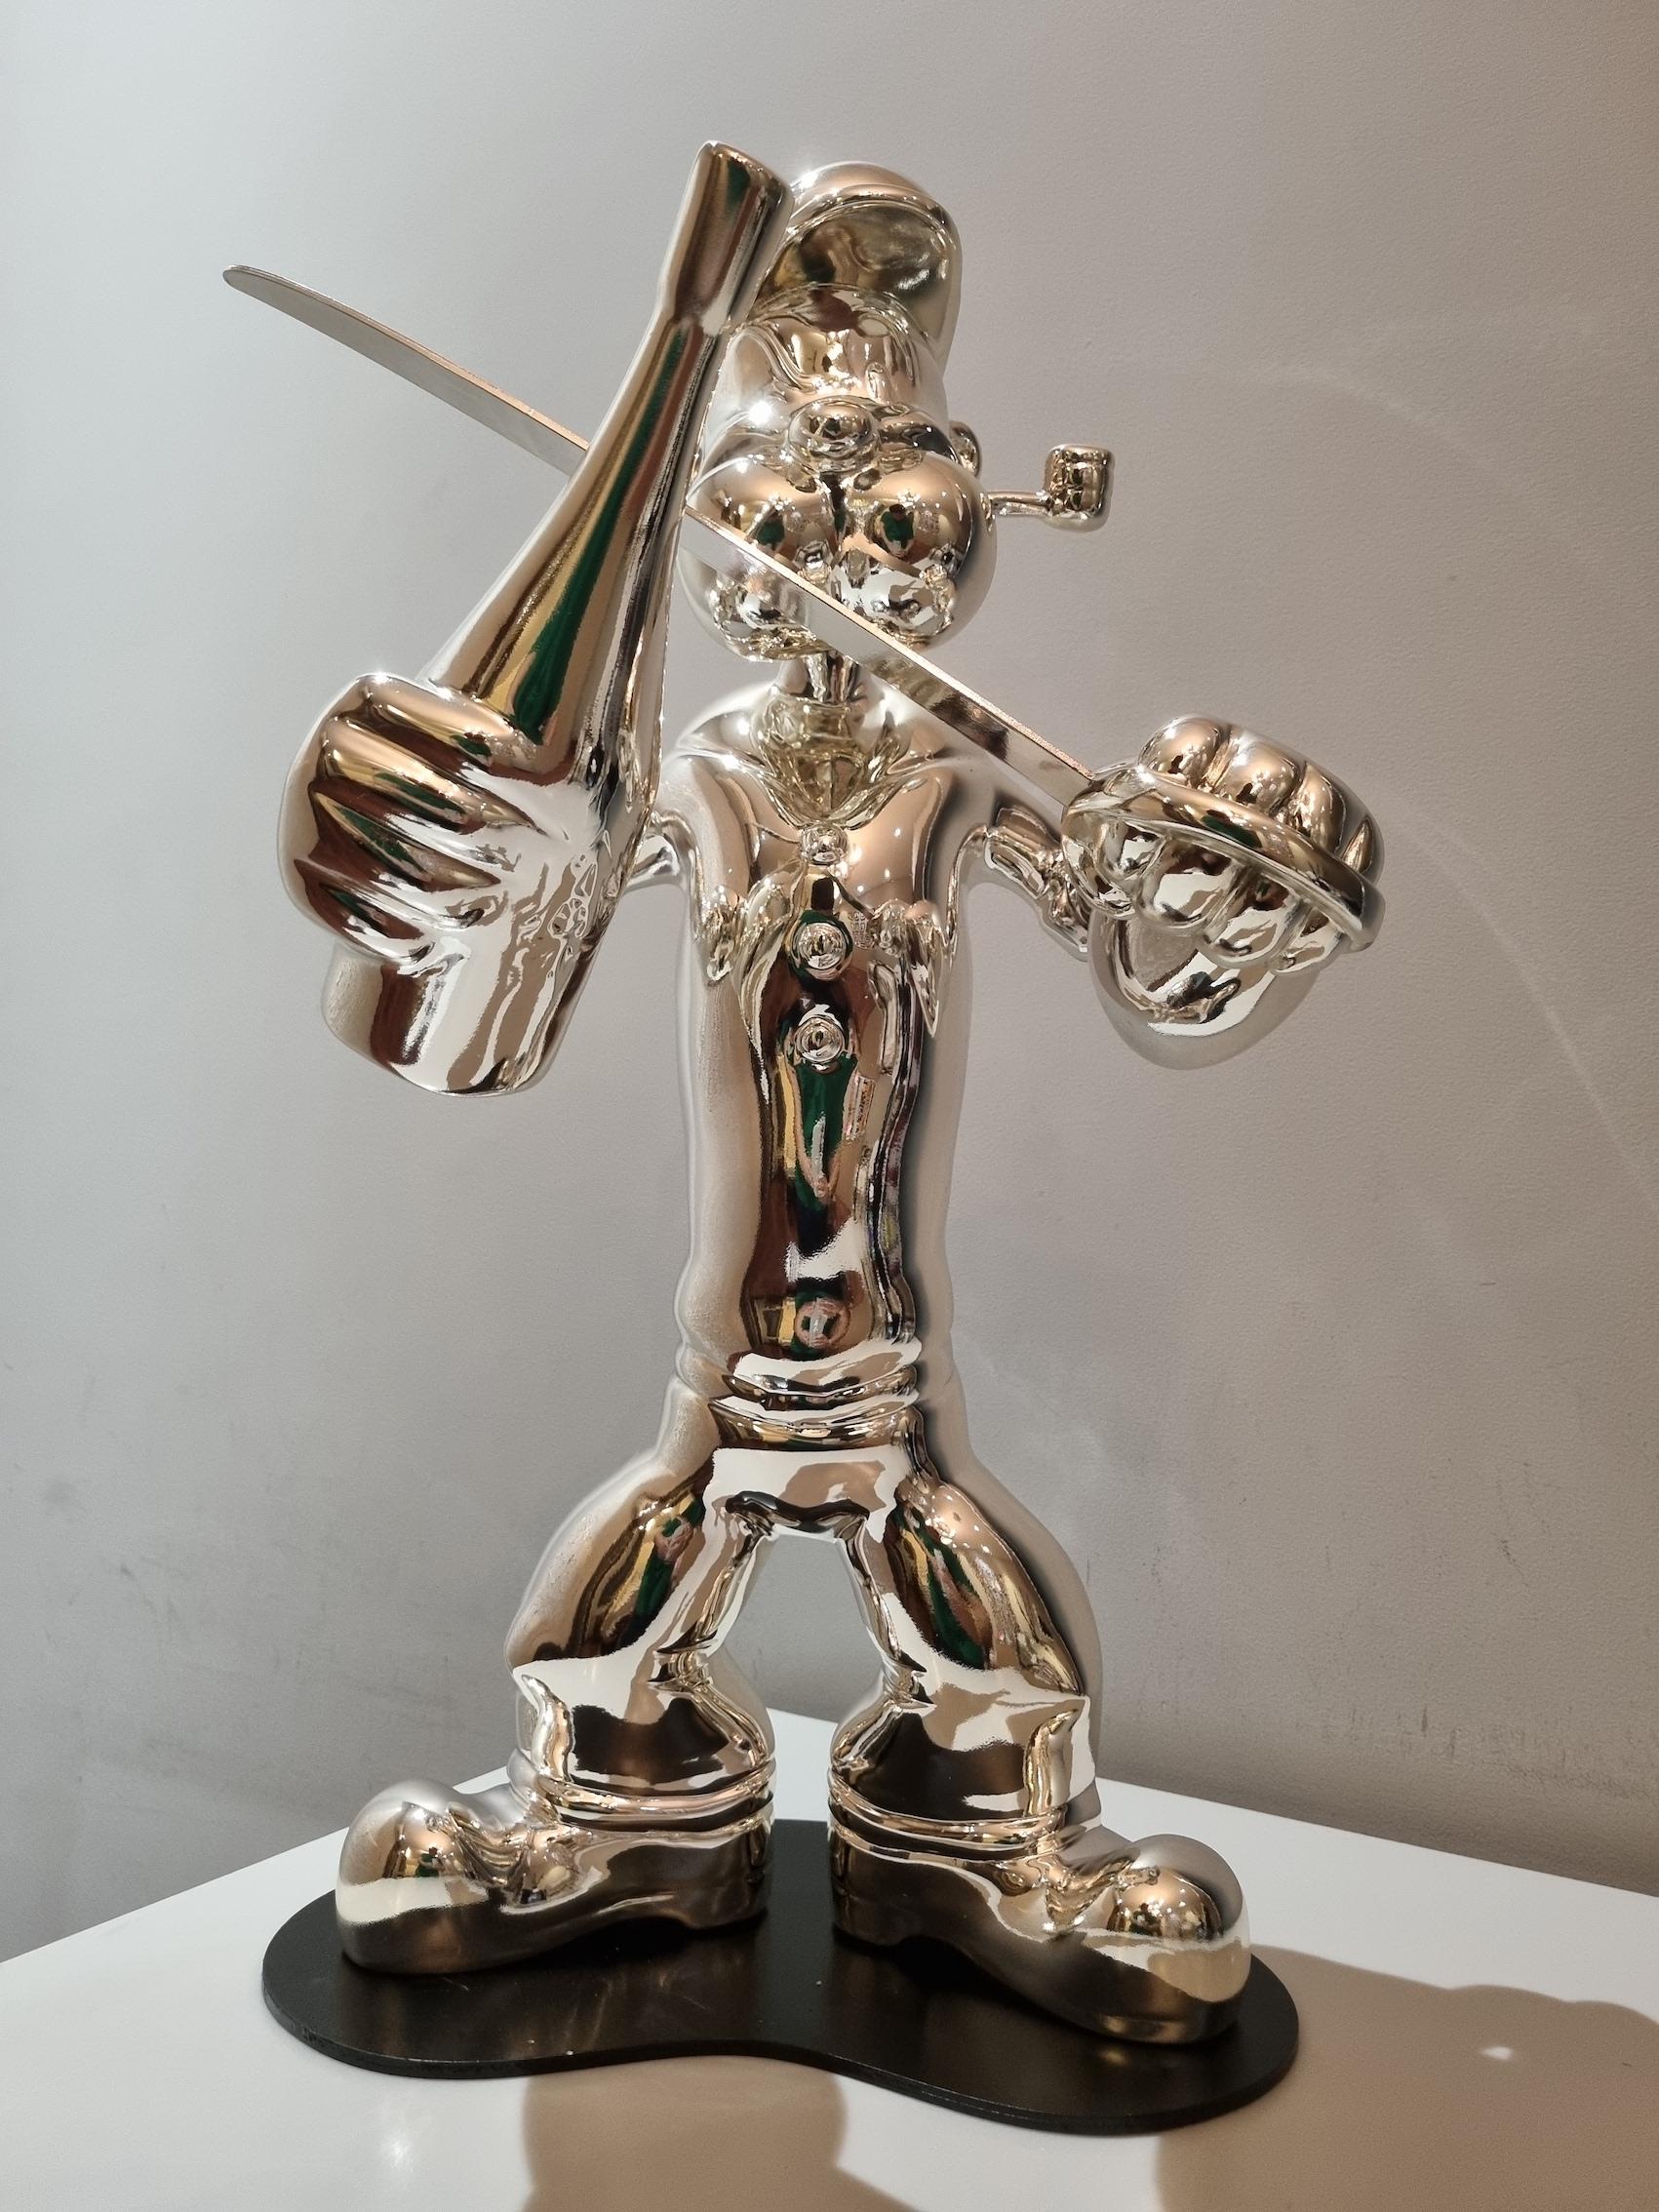 Popeye-original iconic pop art modern sculpture figure-artwork-contemporary Art